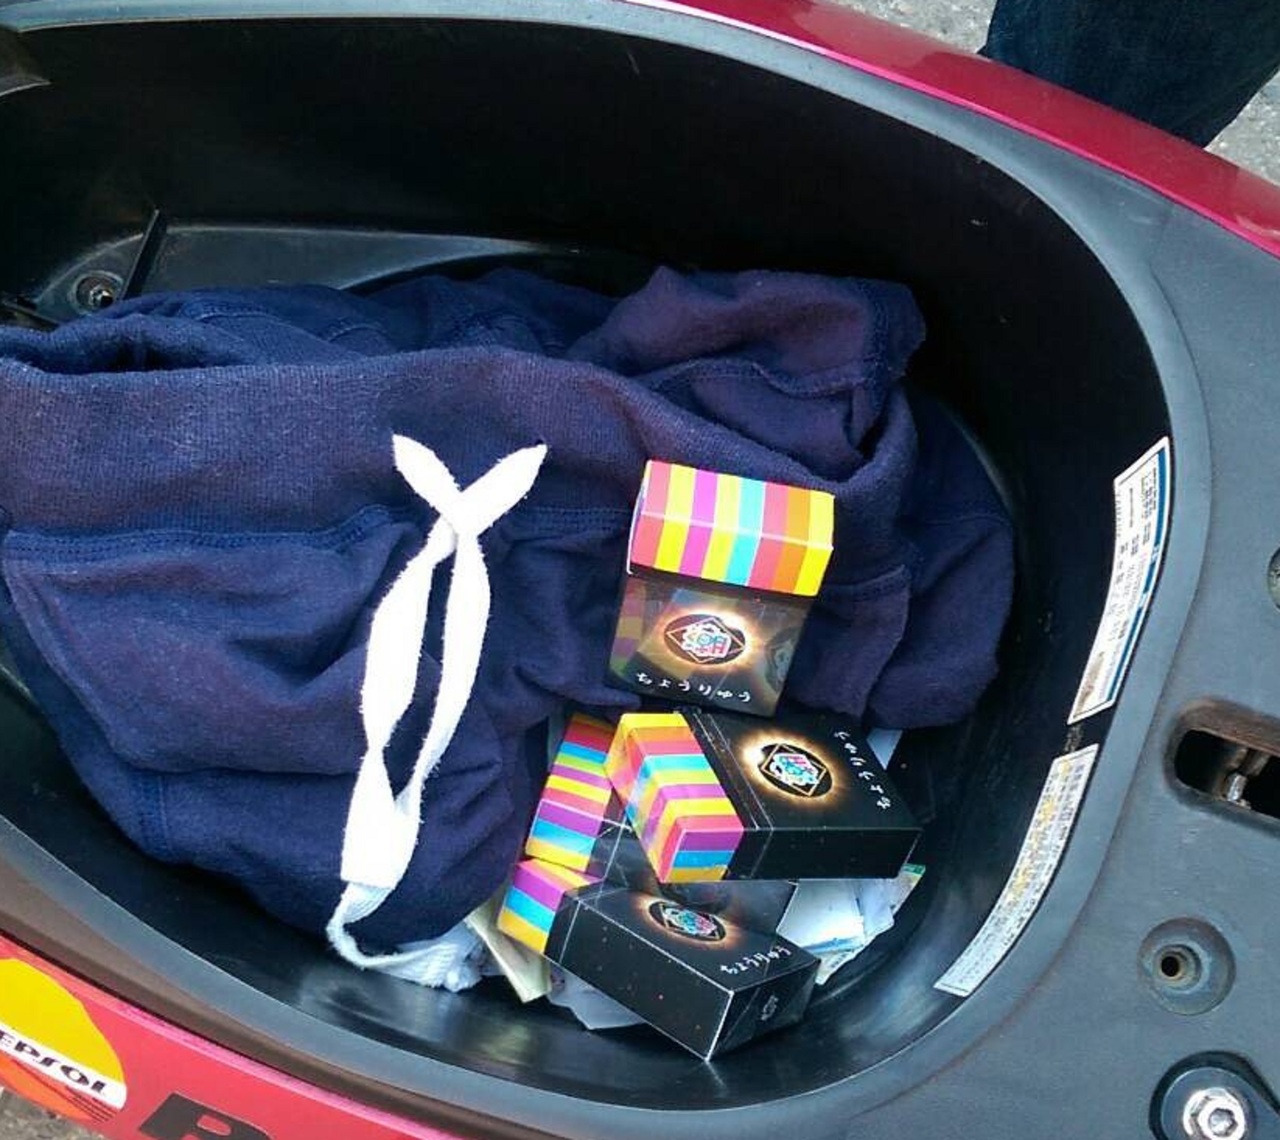 少年購新貨彩虹菸盒藏K他命香菸裝酷 超車被逮